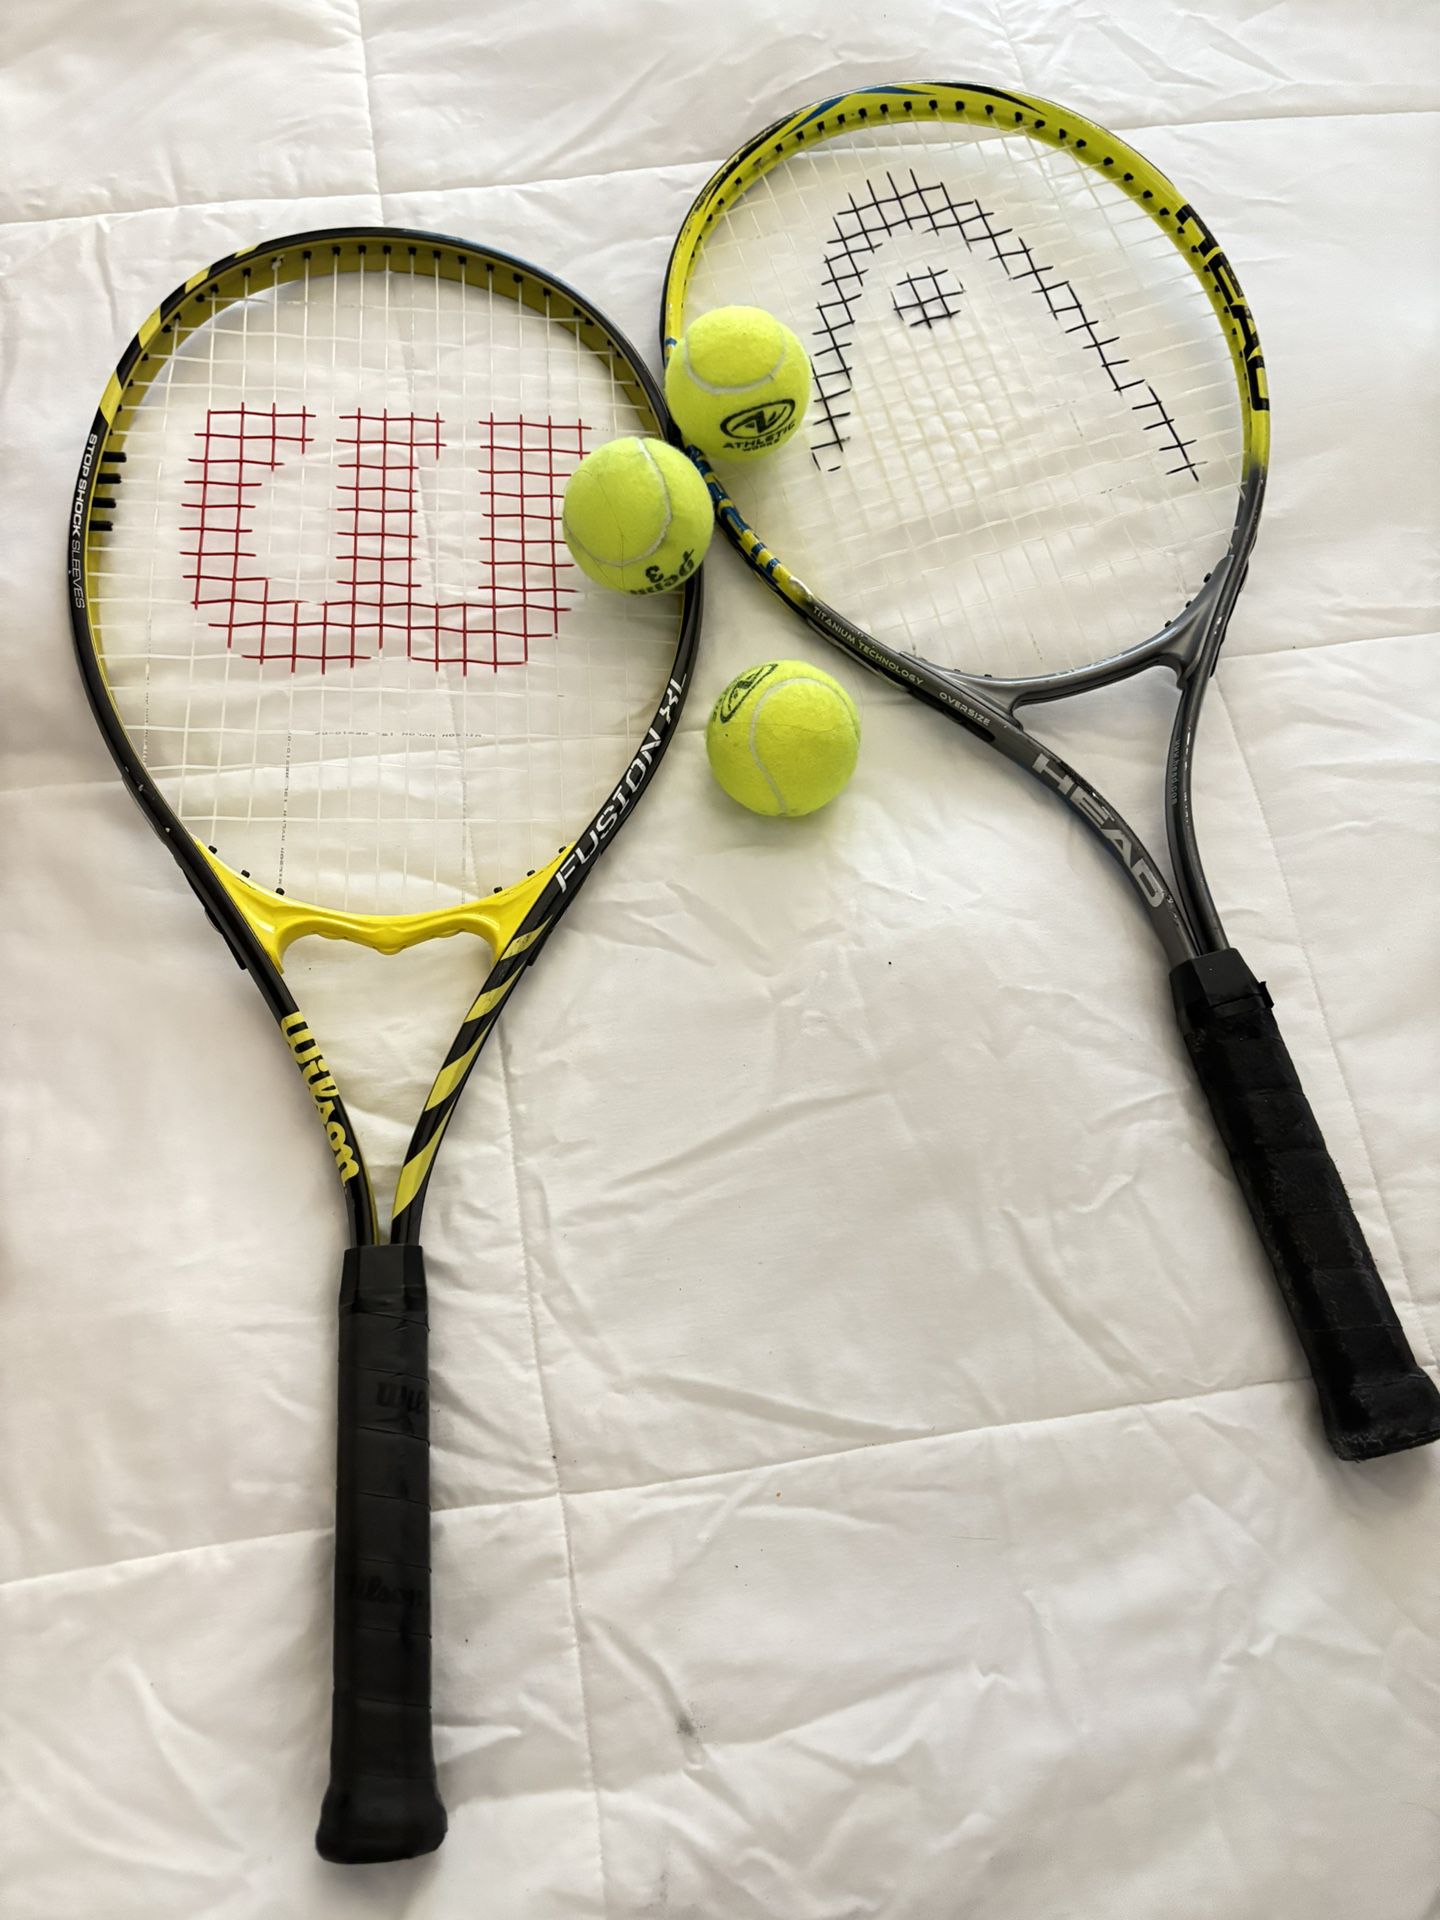 Pair of Titanium Head Tennis Rackets 